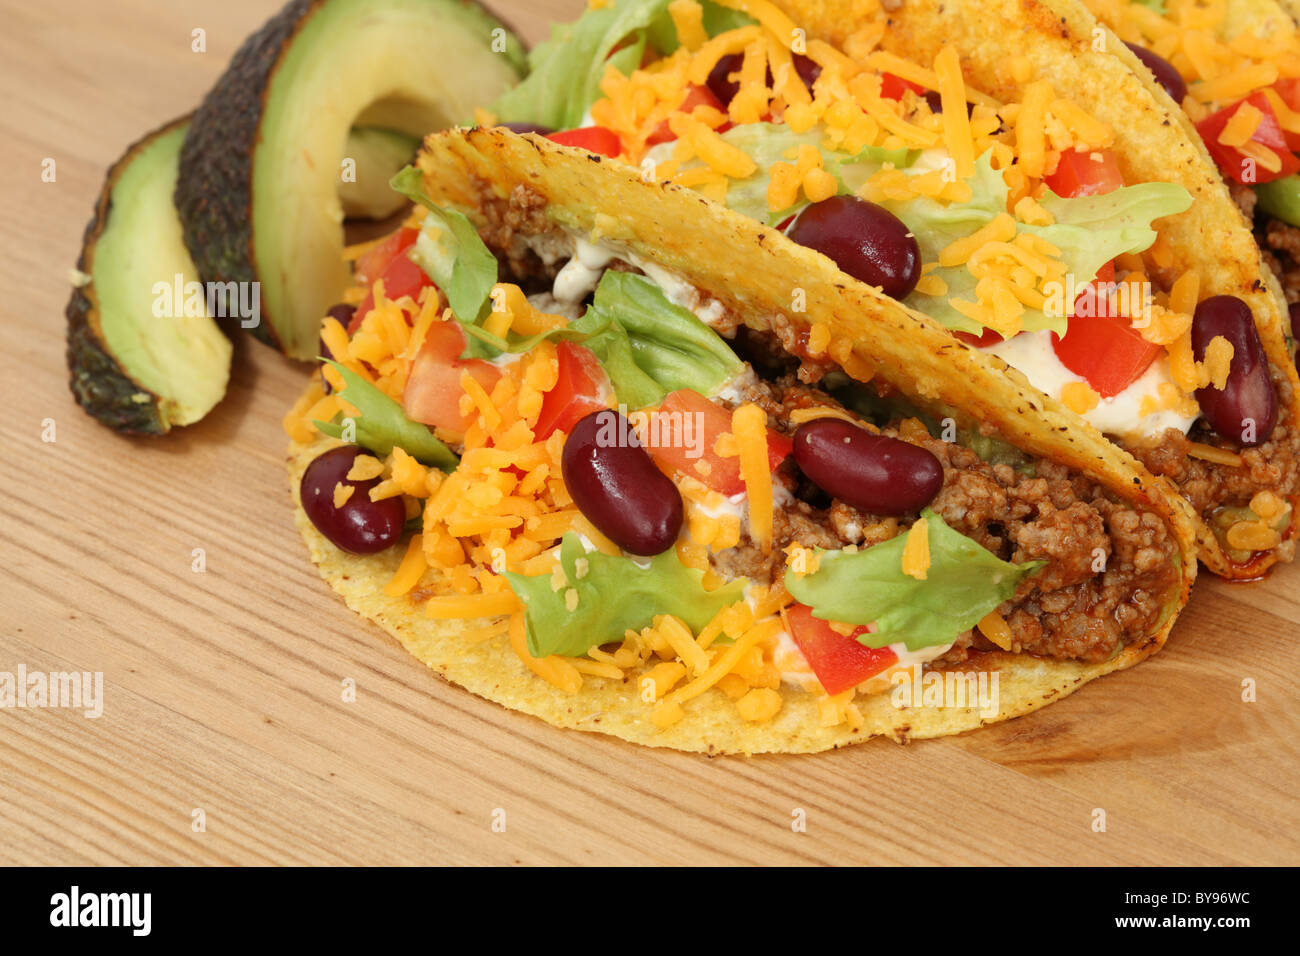 Mexikanisches Essen - Tacos gefüllt mit Hackfleisch / Faschiertes, Käse ...